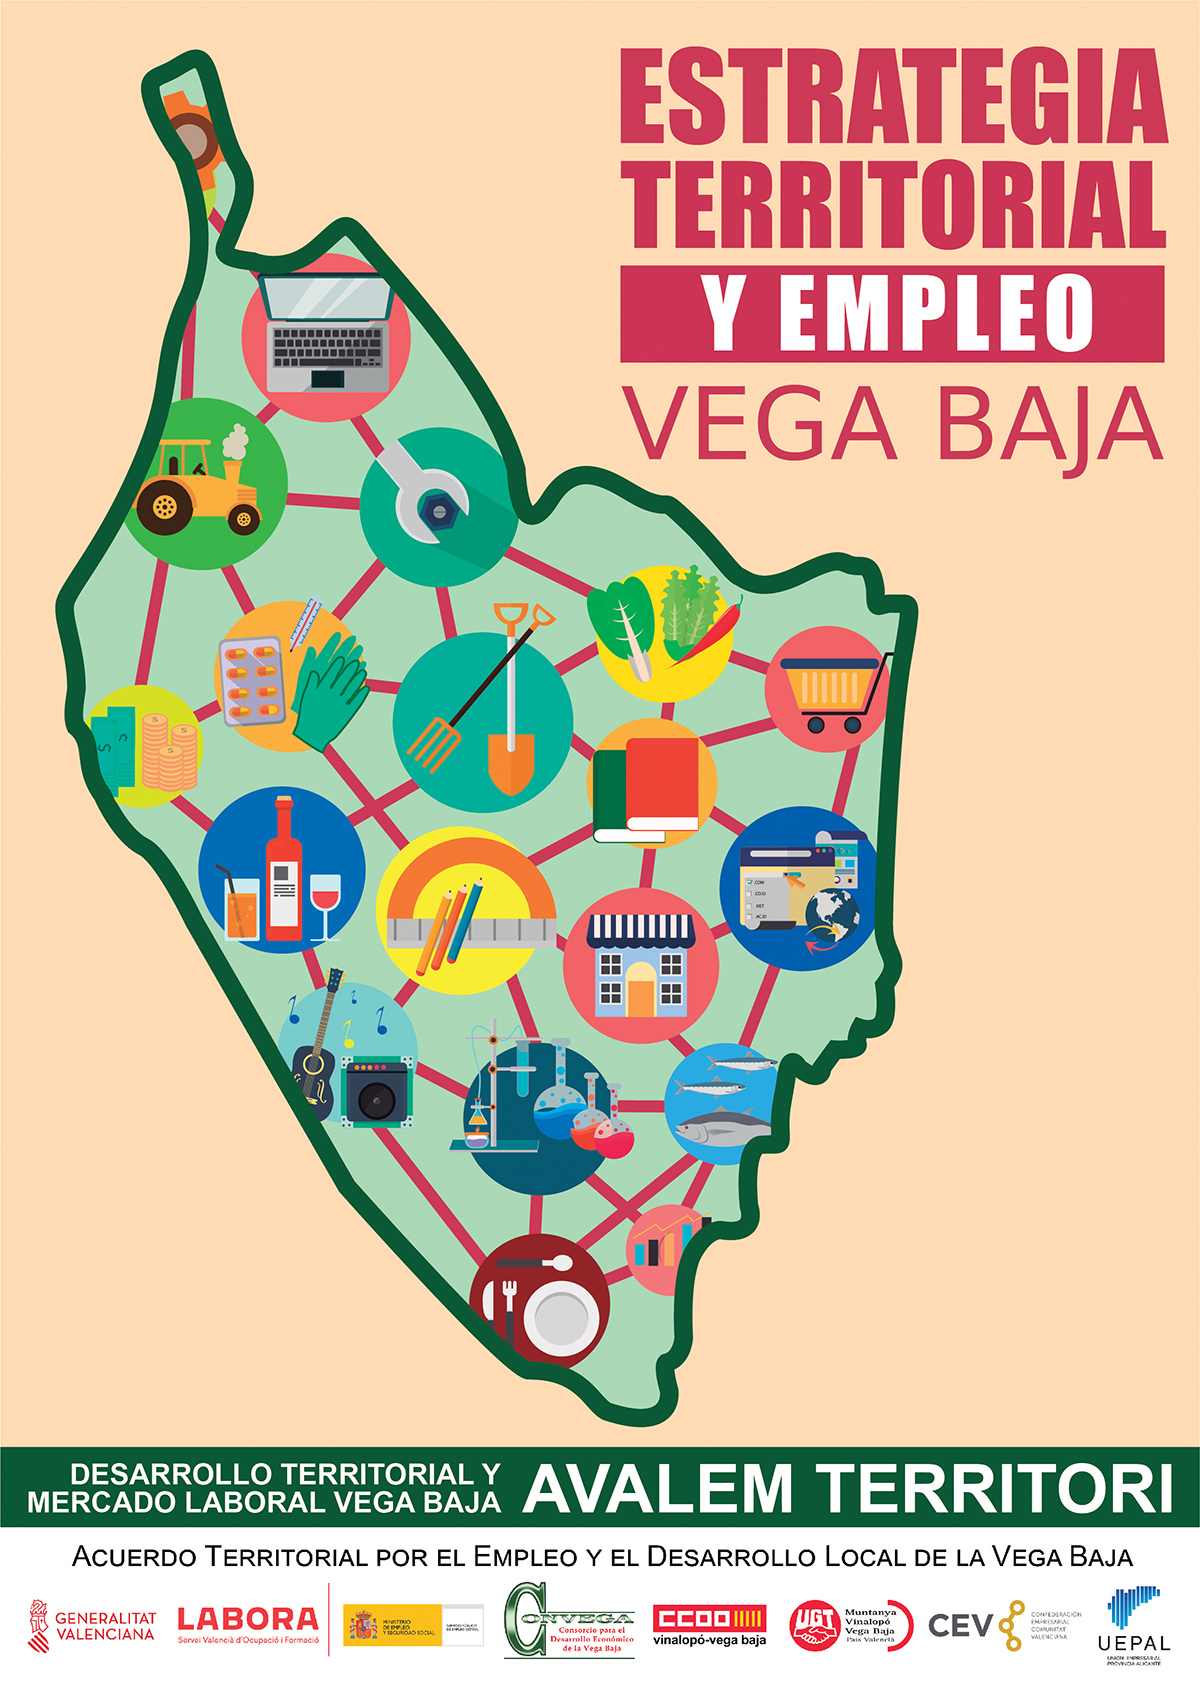 Estrategia Territorial y Empleo Vega Baja